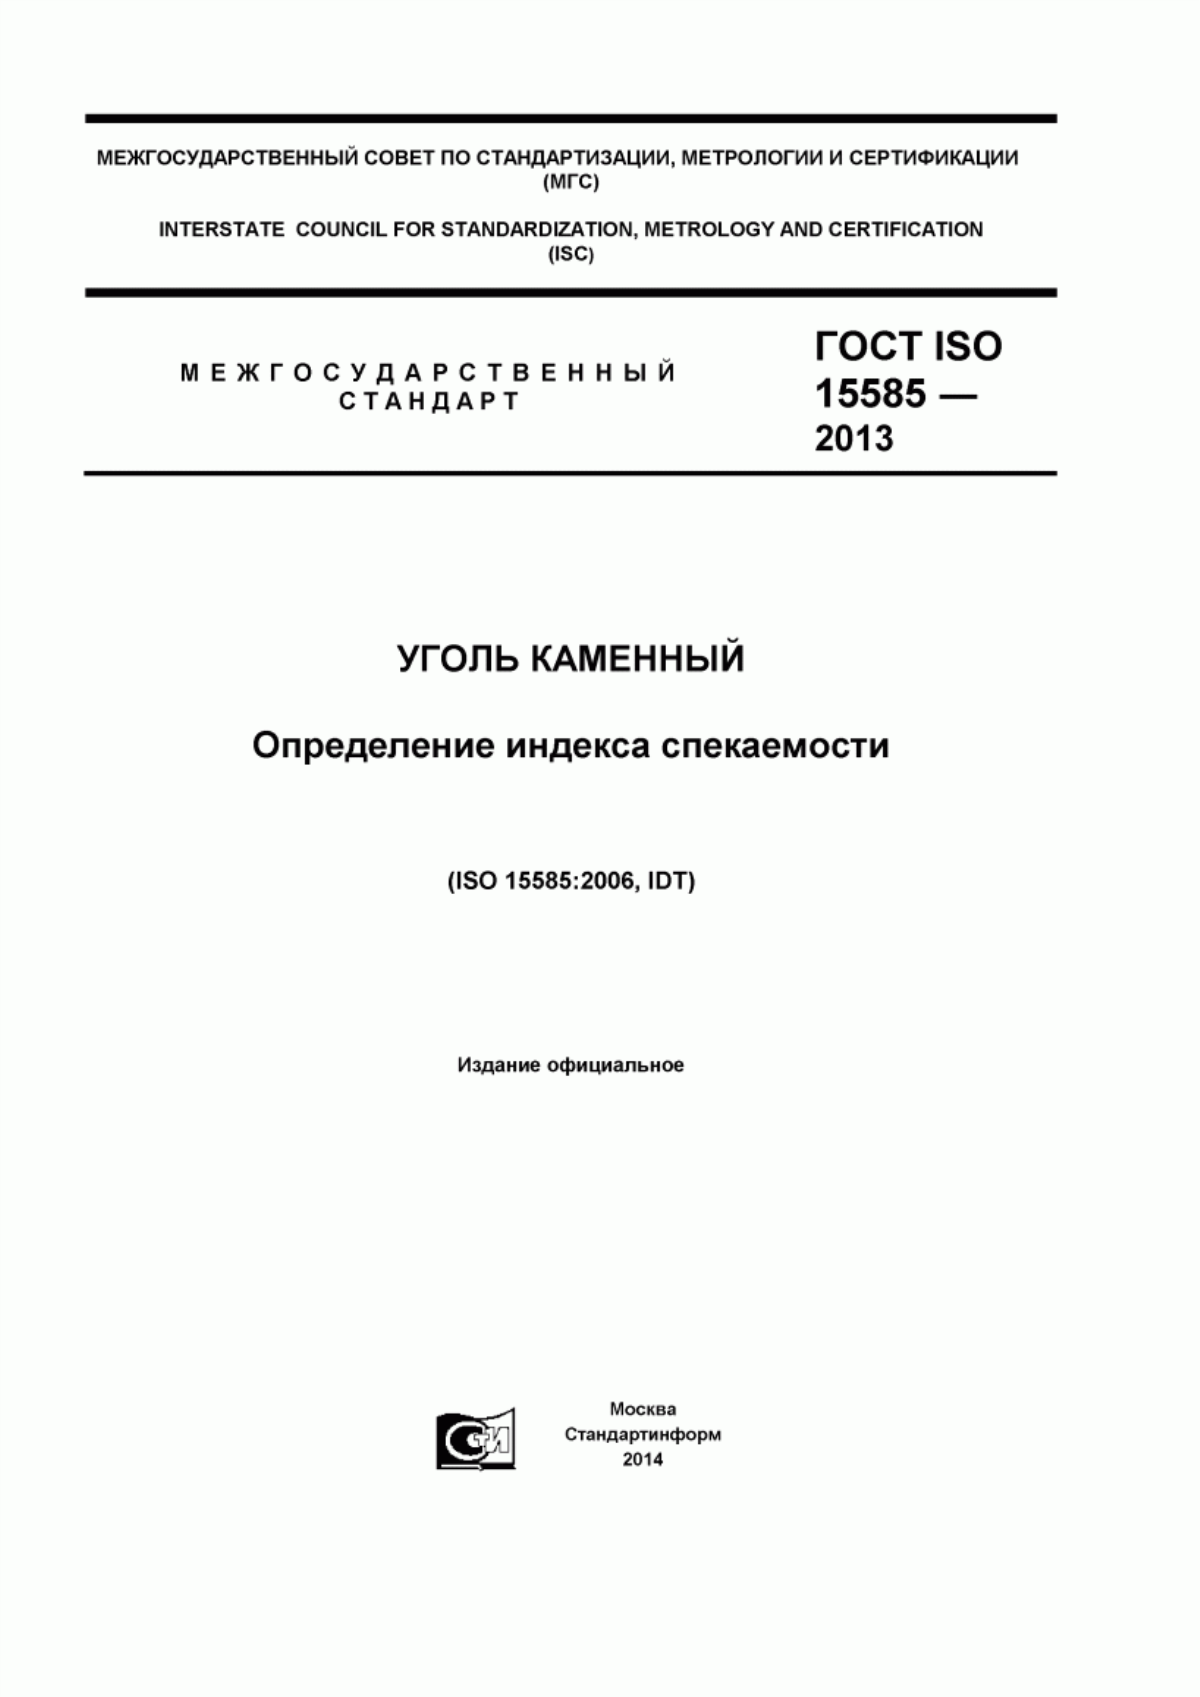 ГОСТ ISO 15585-2013 Уголь каменный. Определение индекса спекаемости